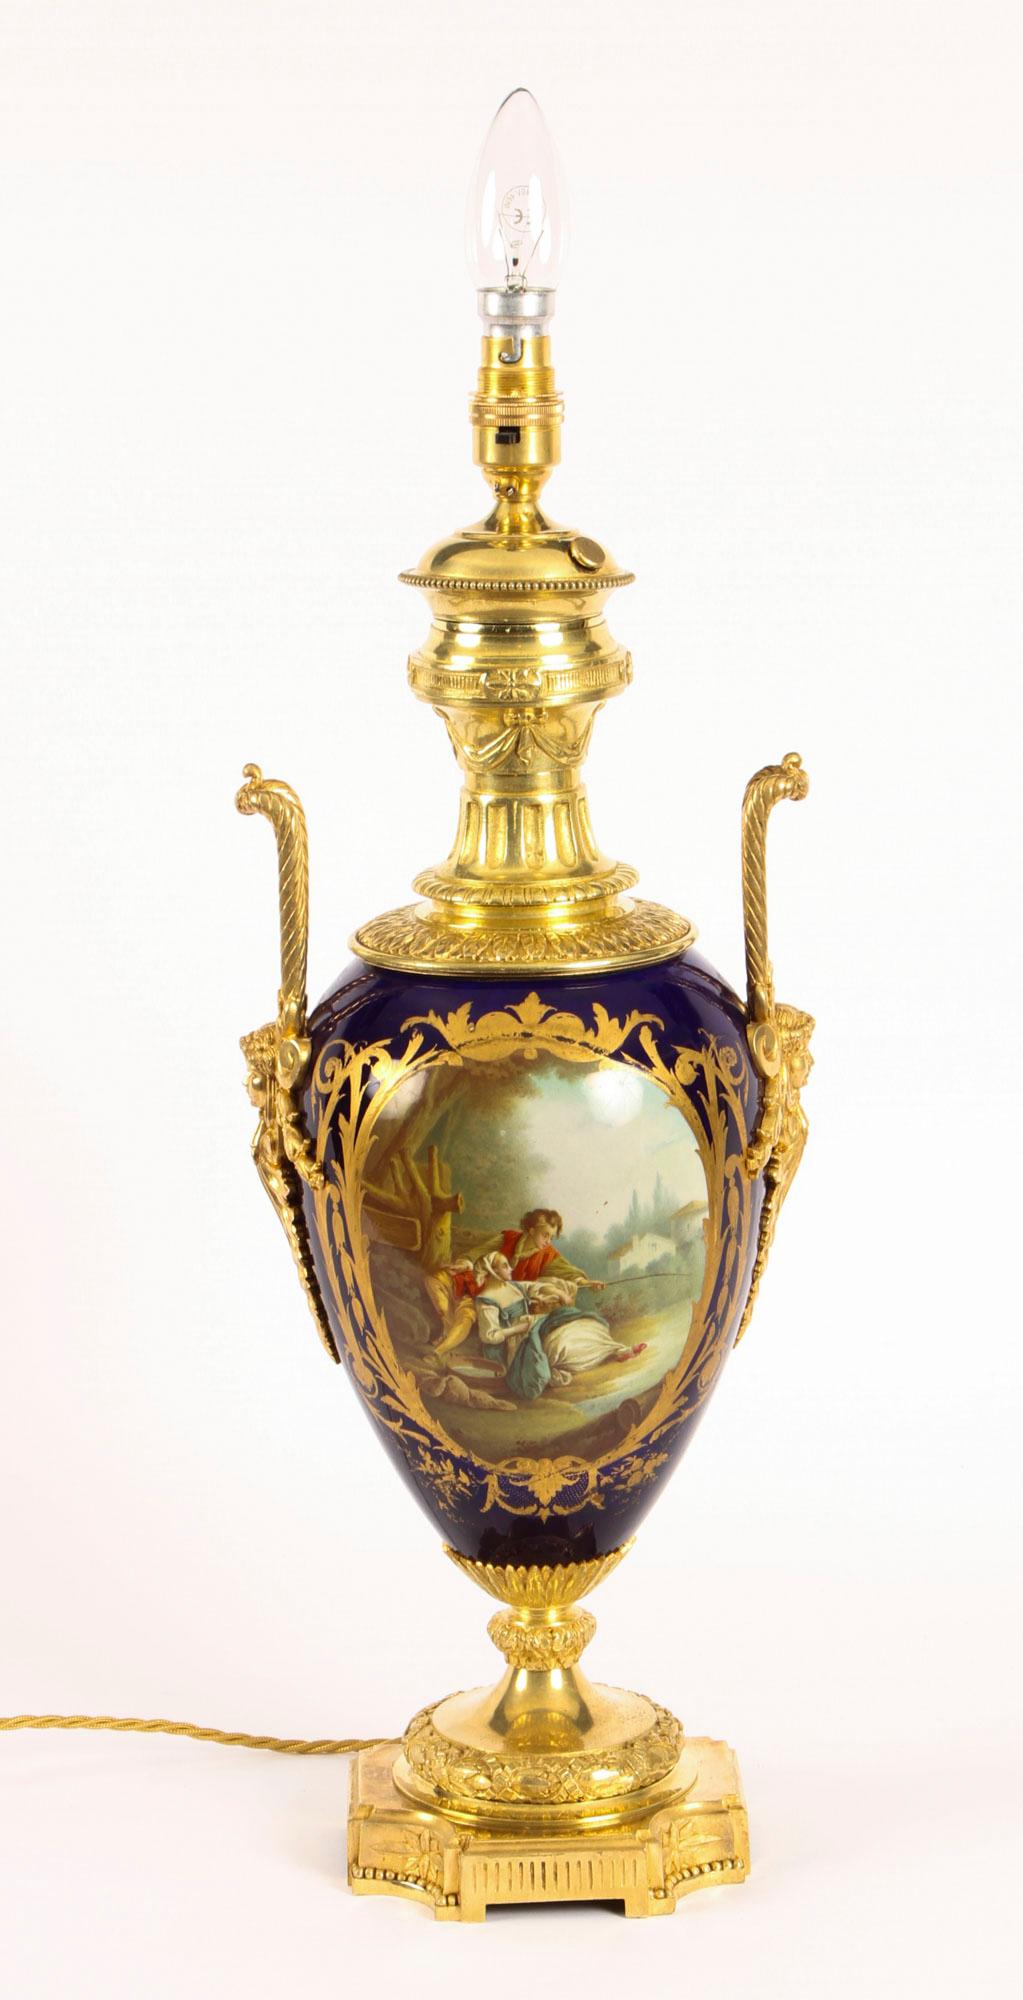 Dies ist eine beeindruckende große antike französische Sèvres kobaltblau handbemalte Porzellan und Ormolu montiert Vase um 1880 in Datum, später in eine Lampe umgewandelt.

Der vasenförmige Porzellankörper ist auf der einen Seite mit goldgerahmten